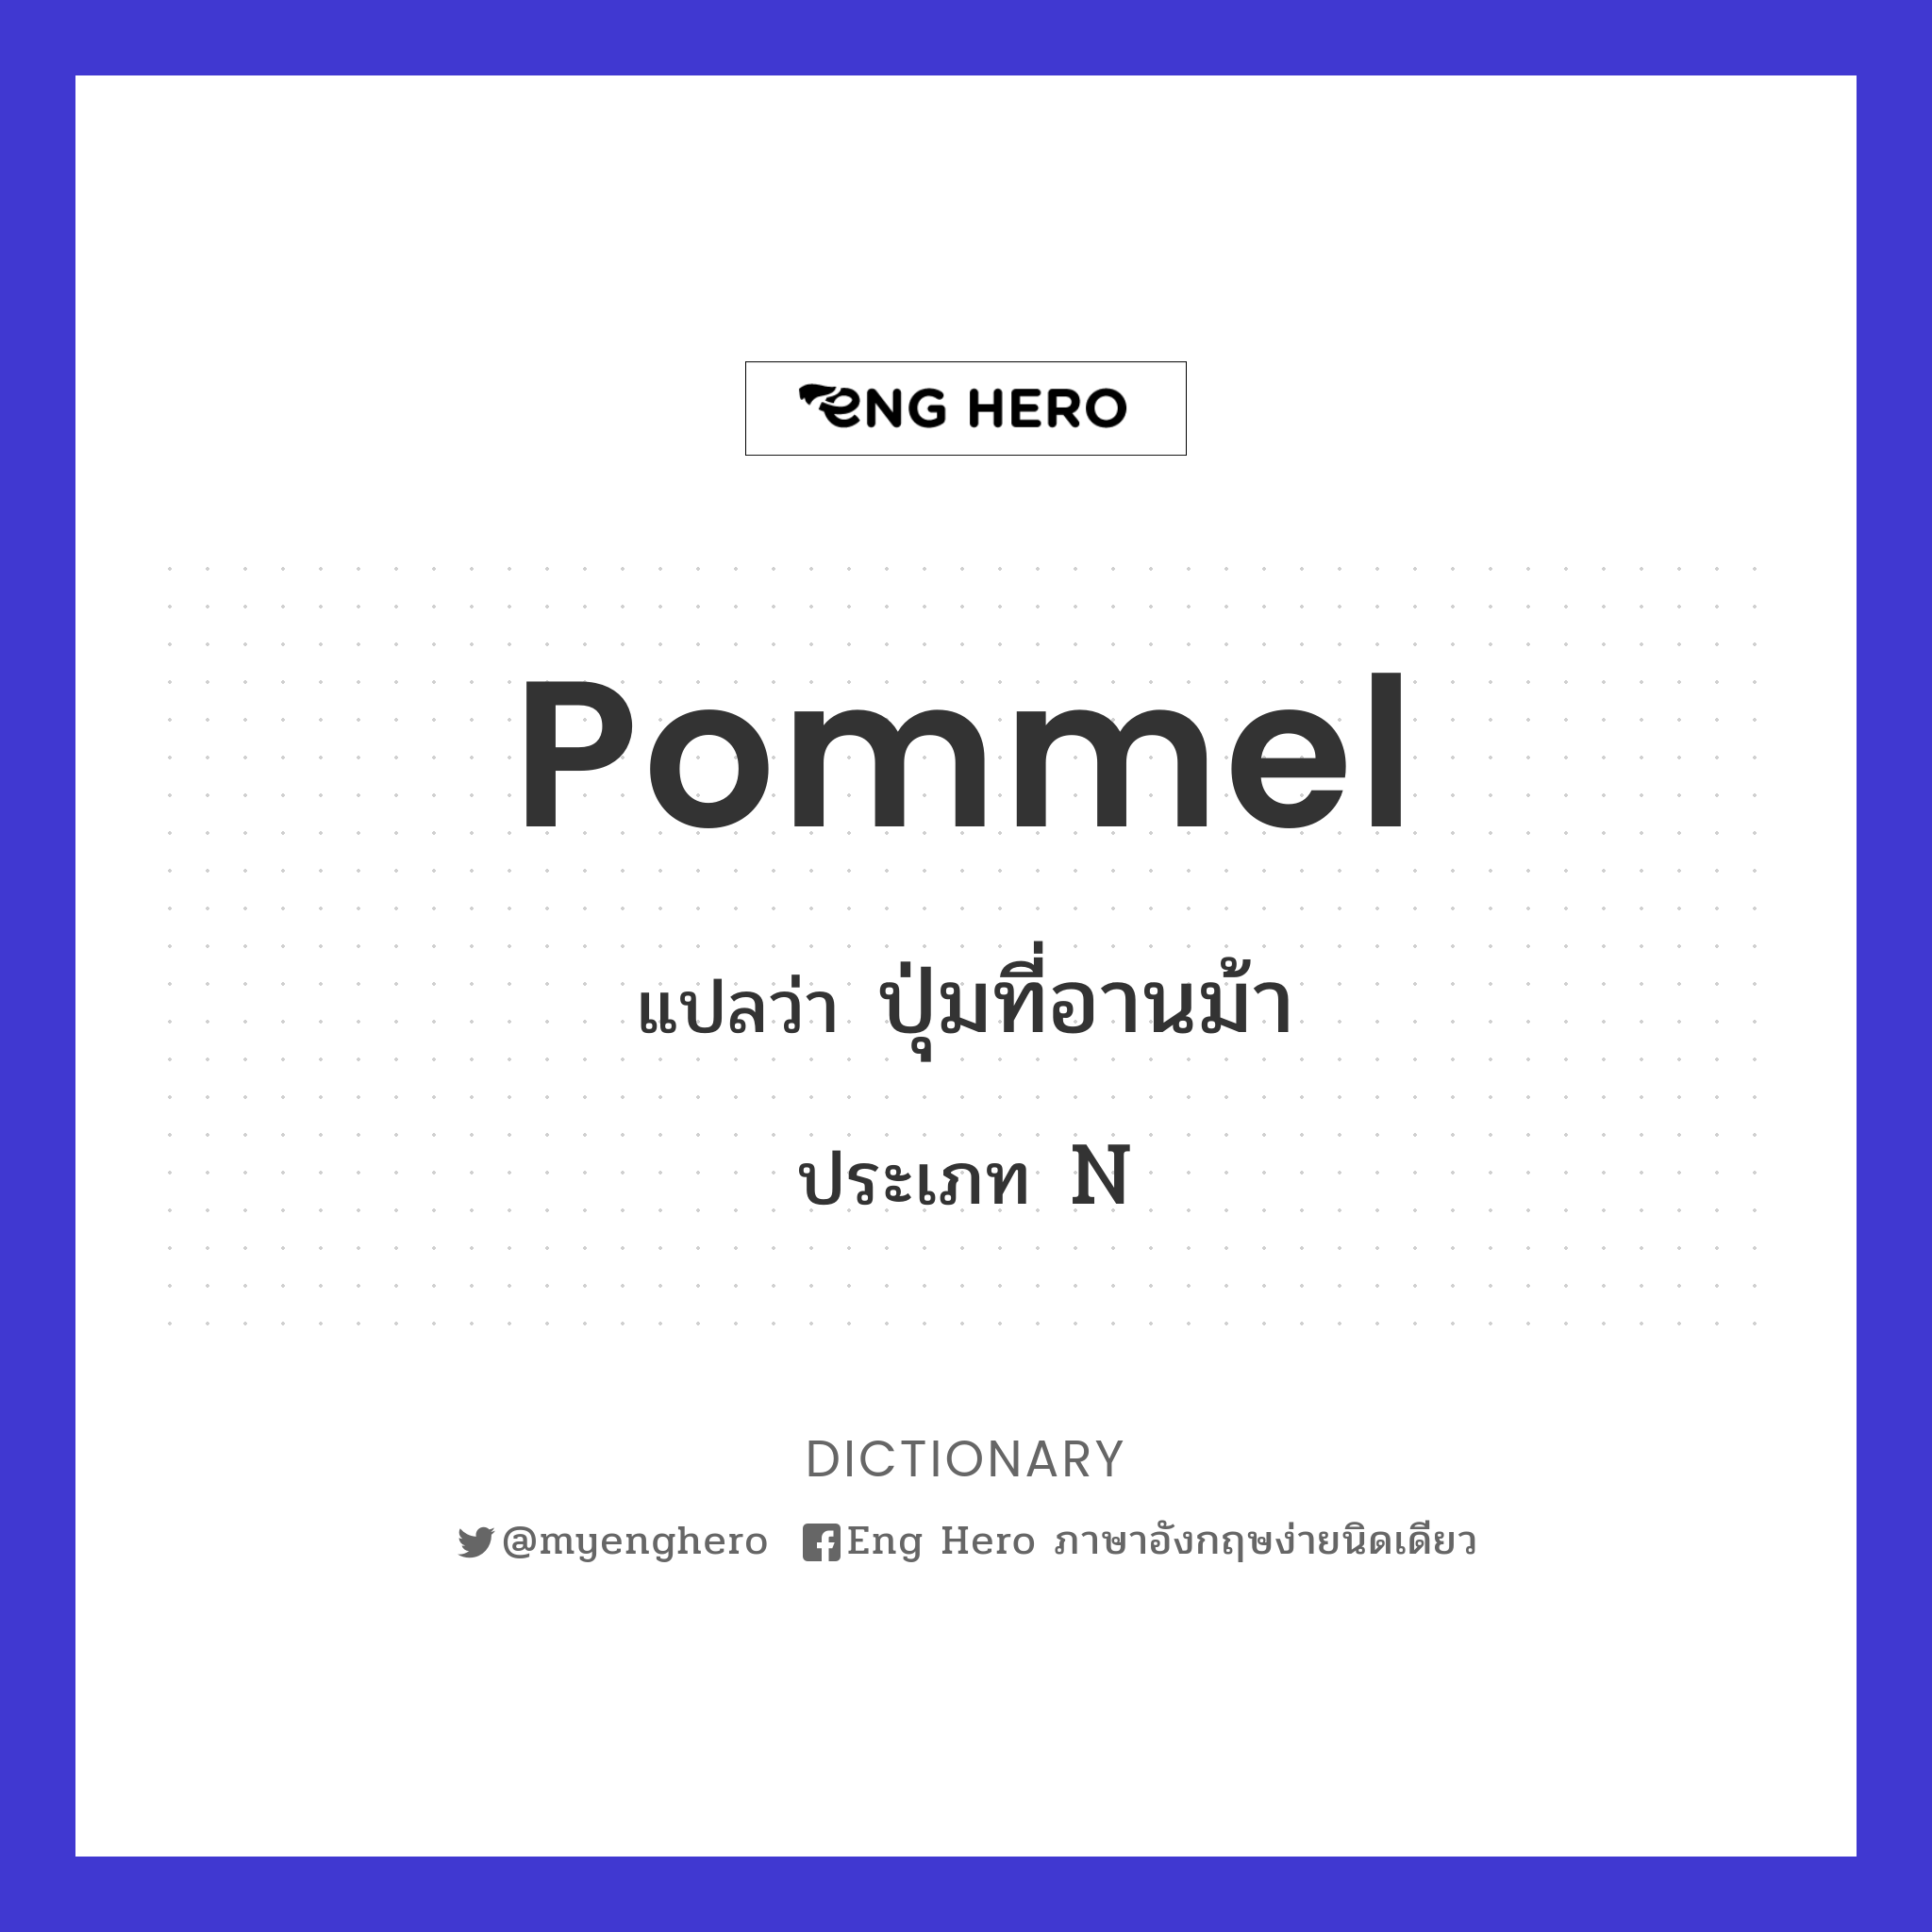 pommel